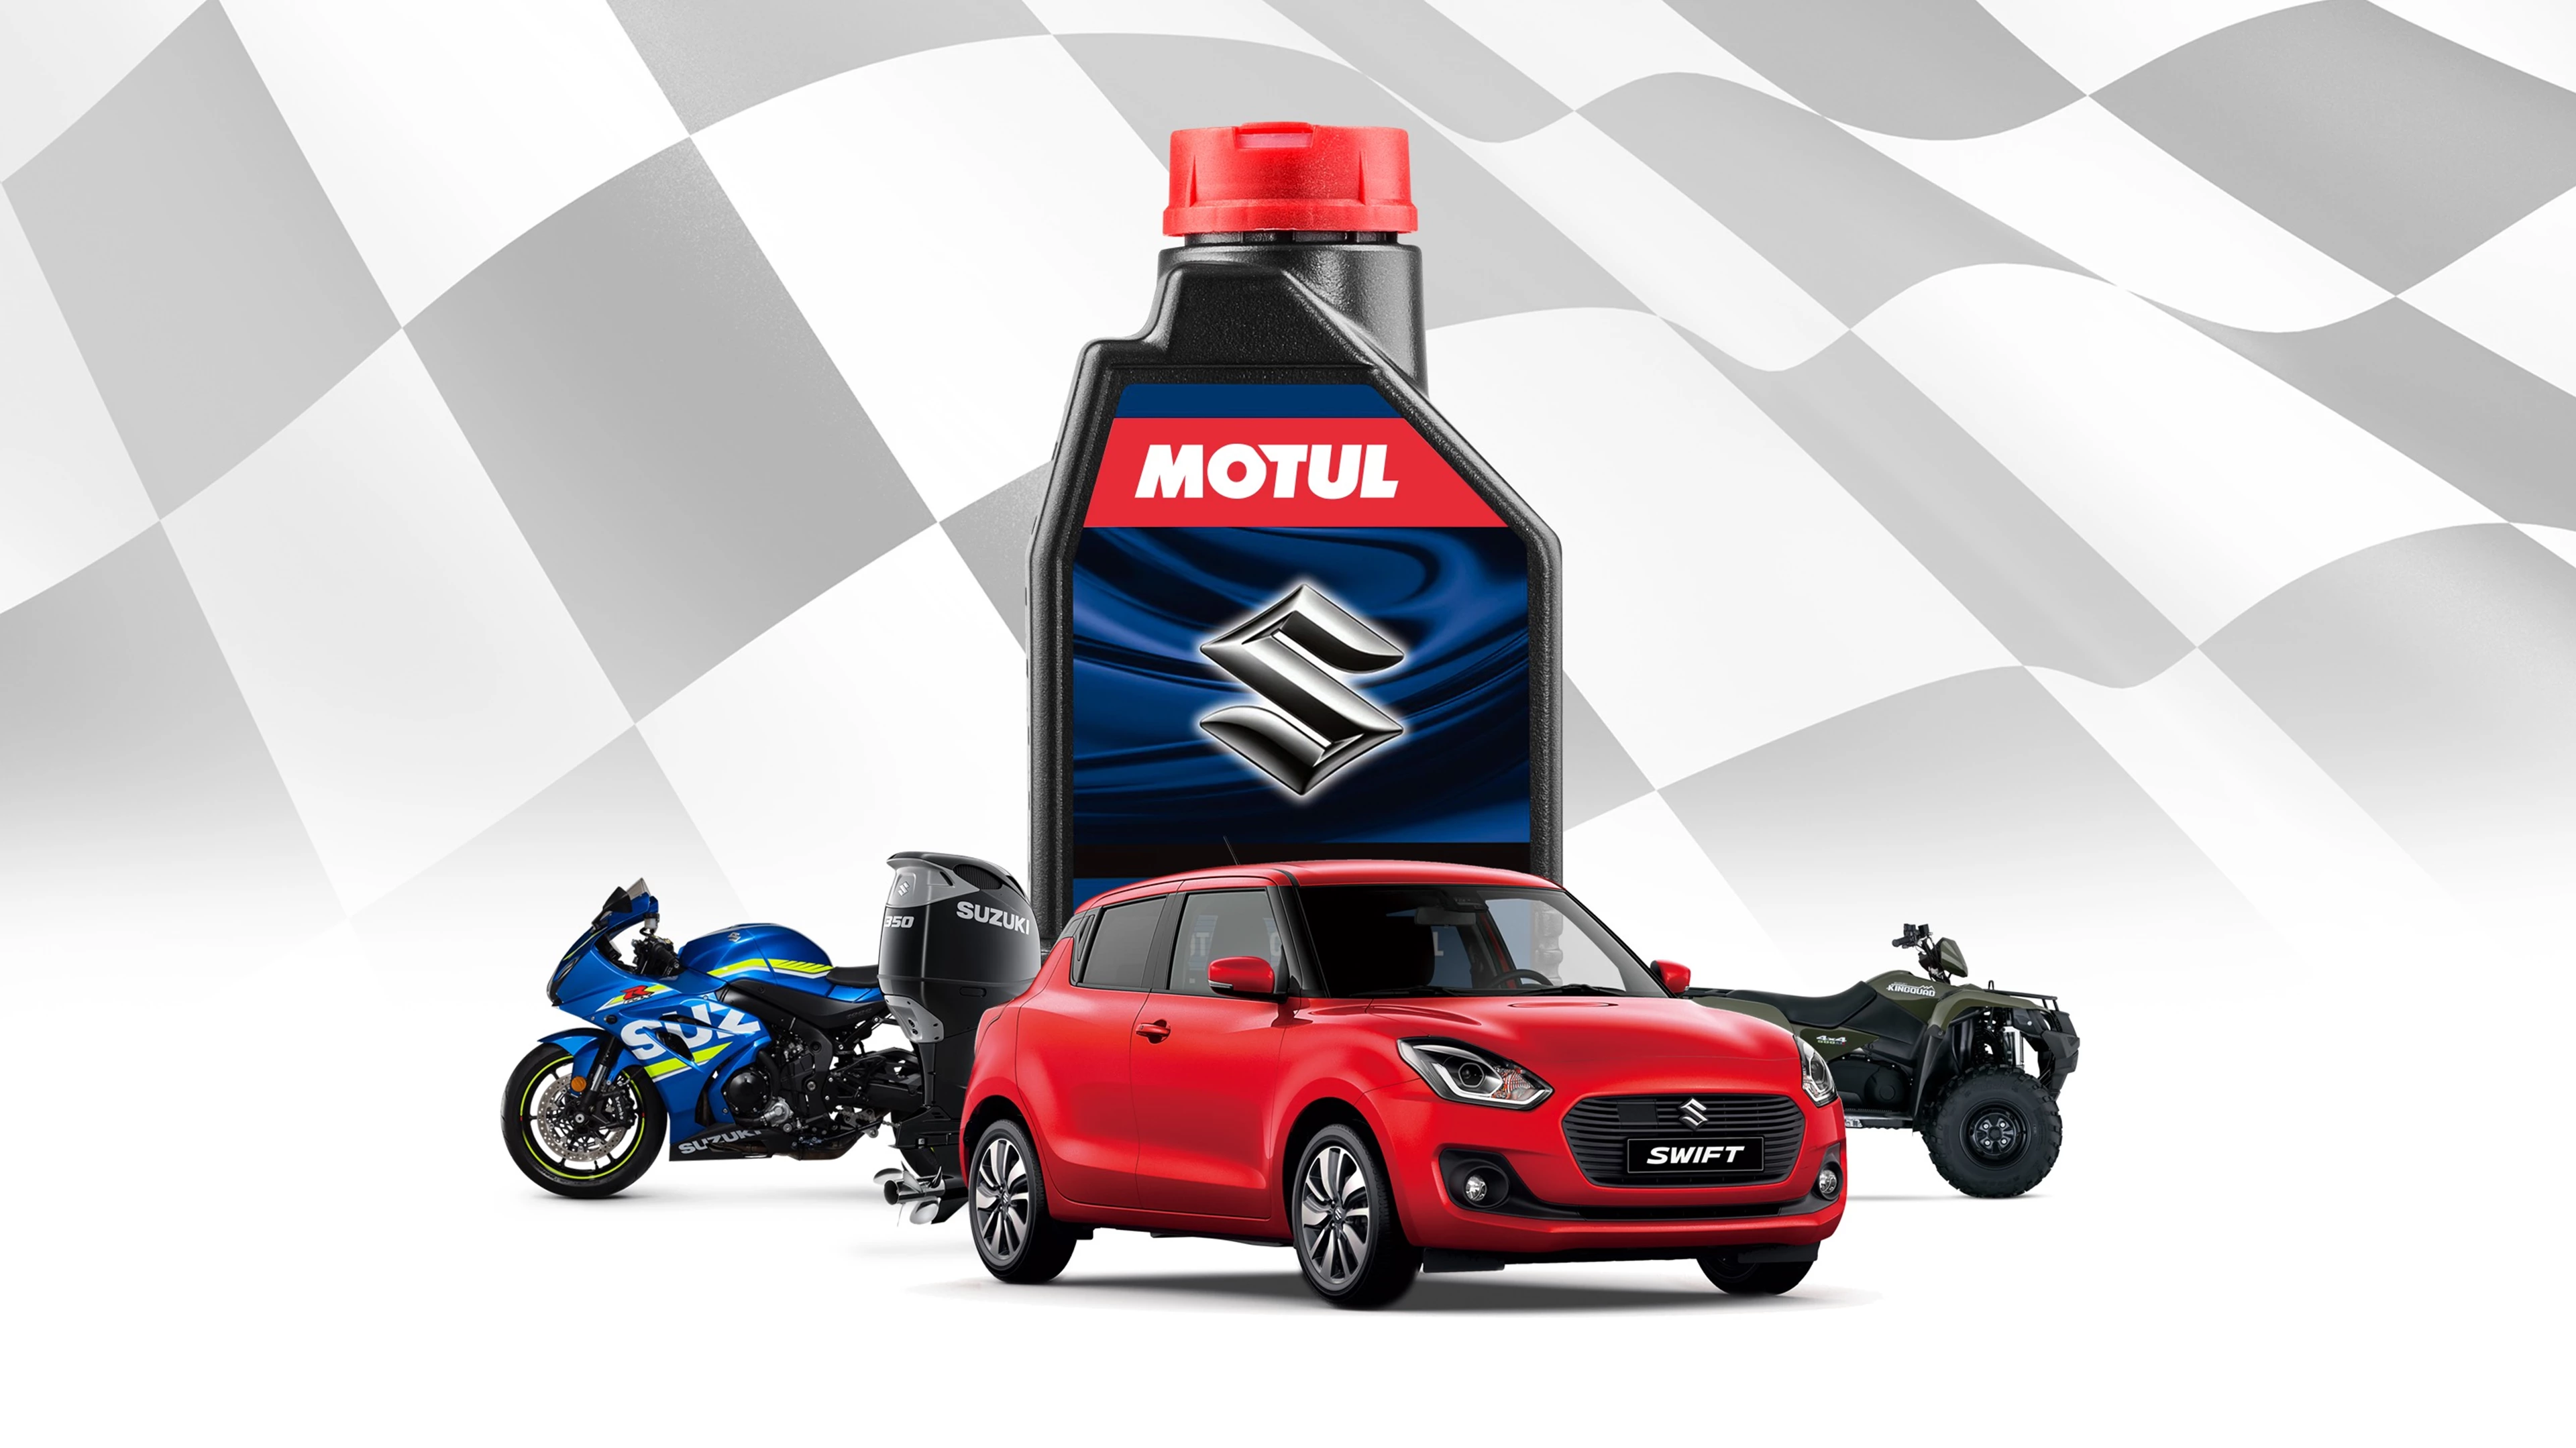 Motul bottle with Suzuki products